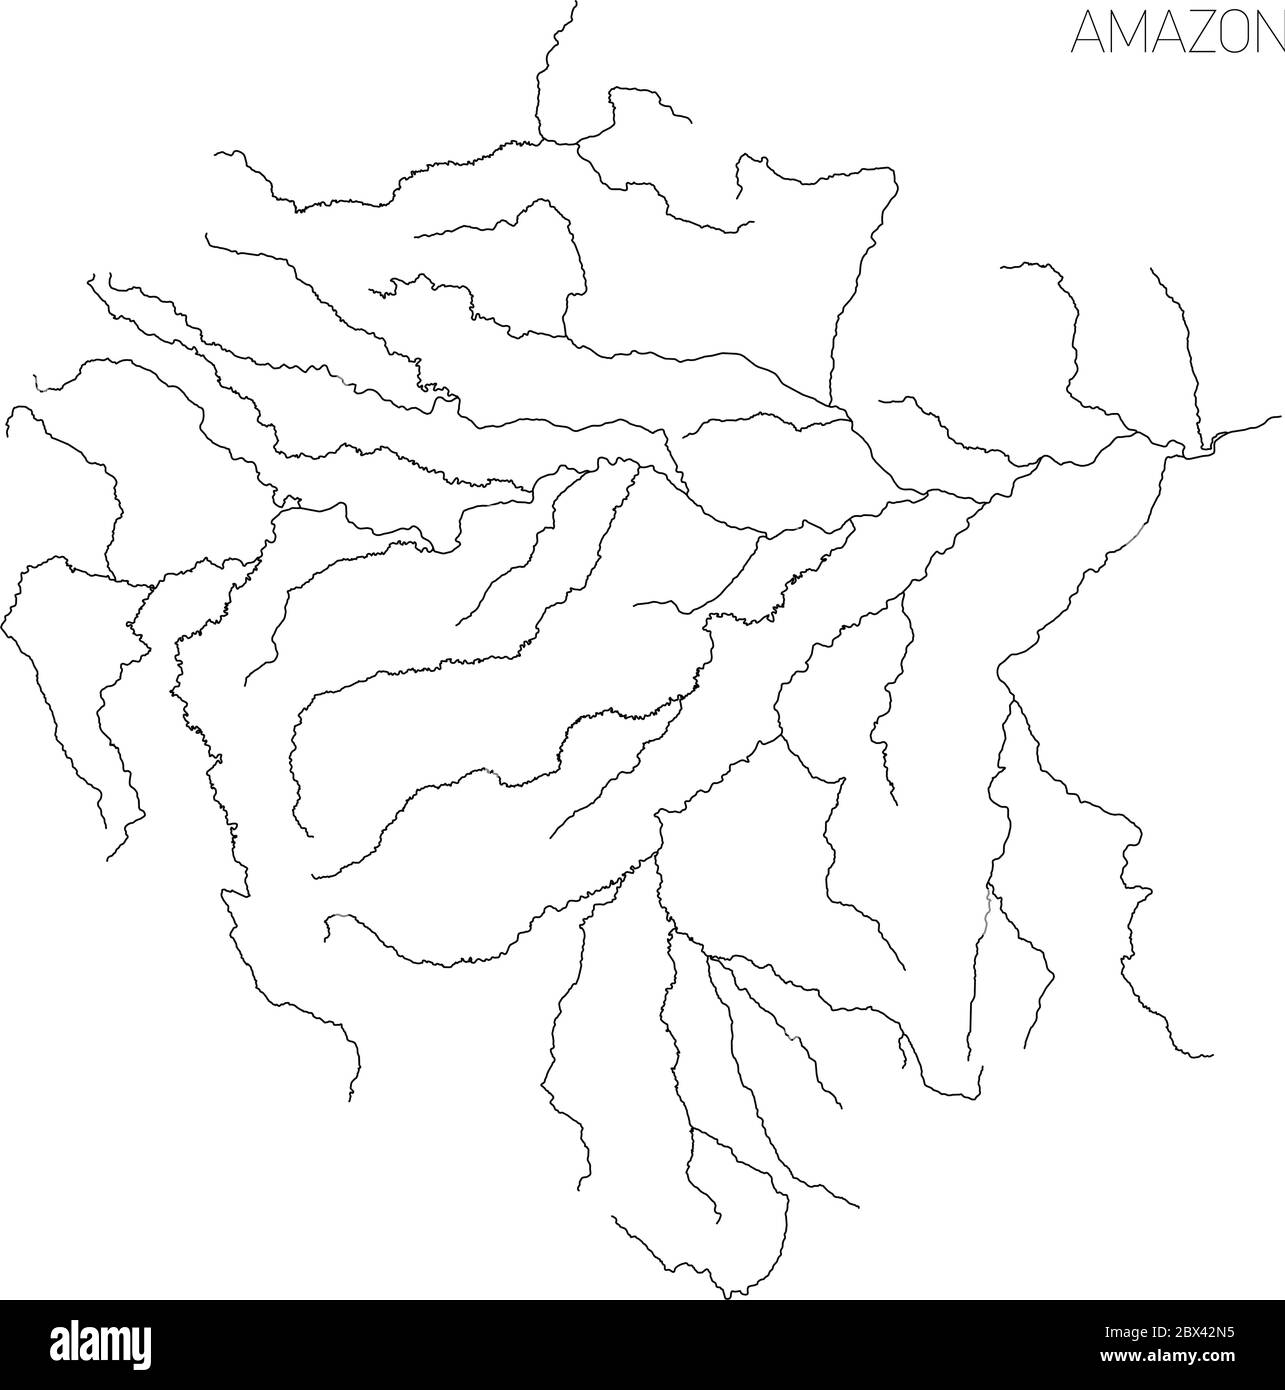 Mapa de la cuenca hidrográfica del río Amazonas. Ilustración simple de  vector de contorno delgado Imagen Vector de stock - Alamy